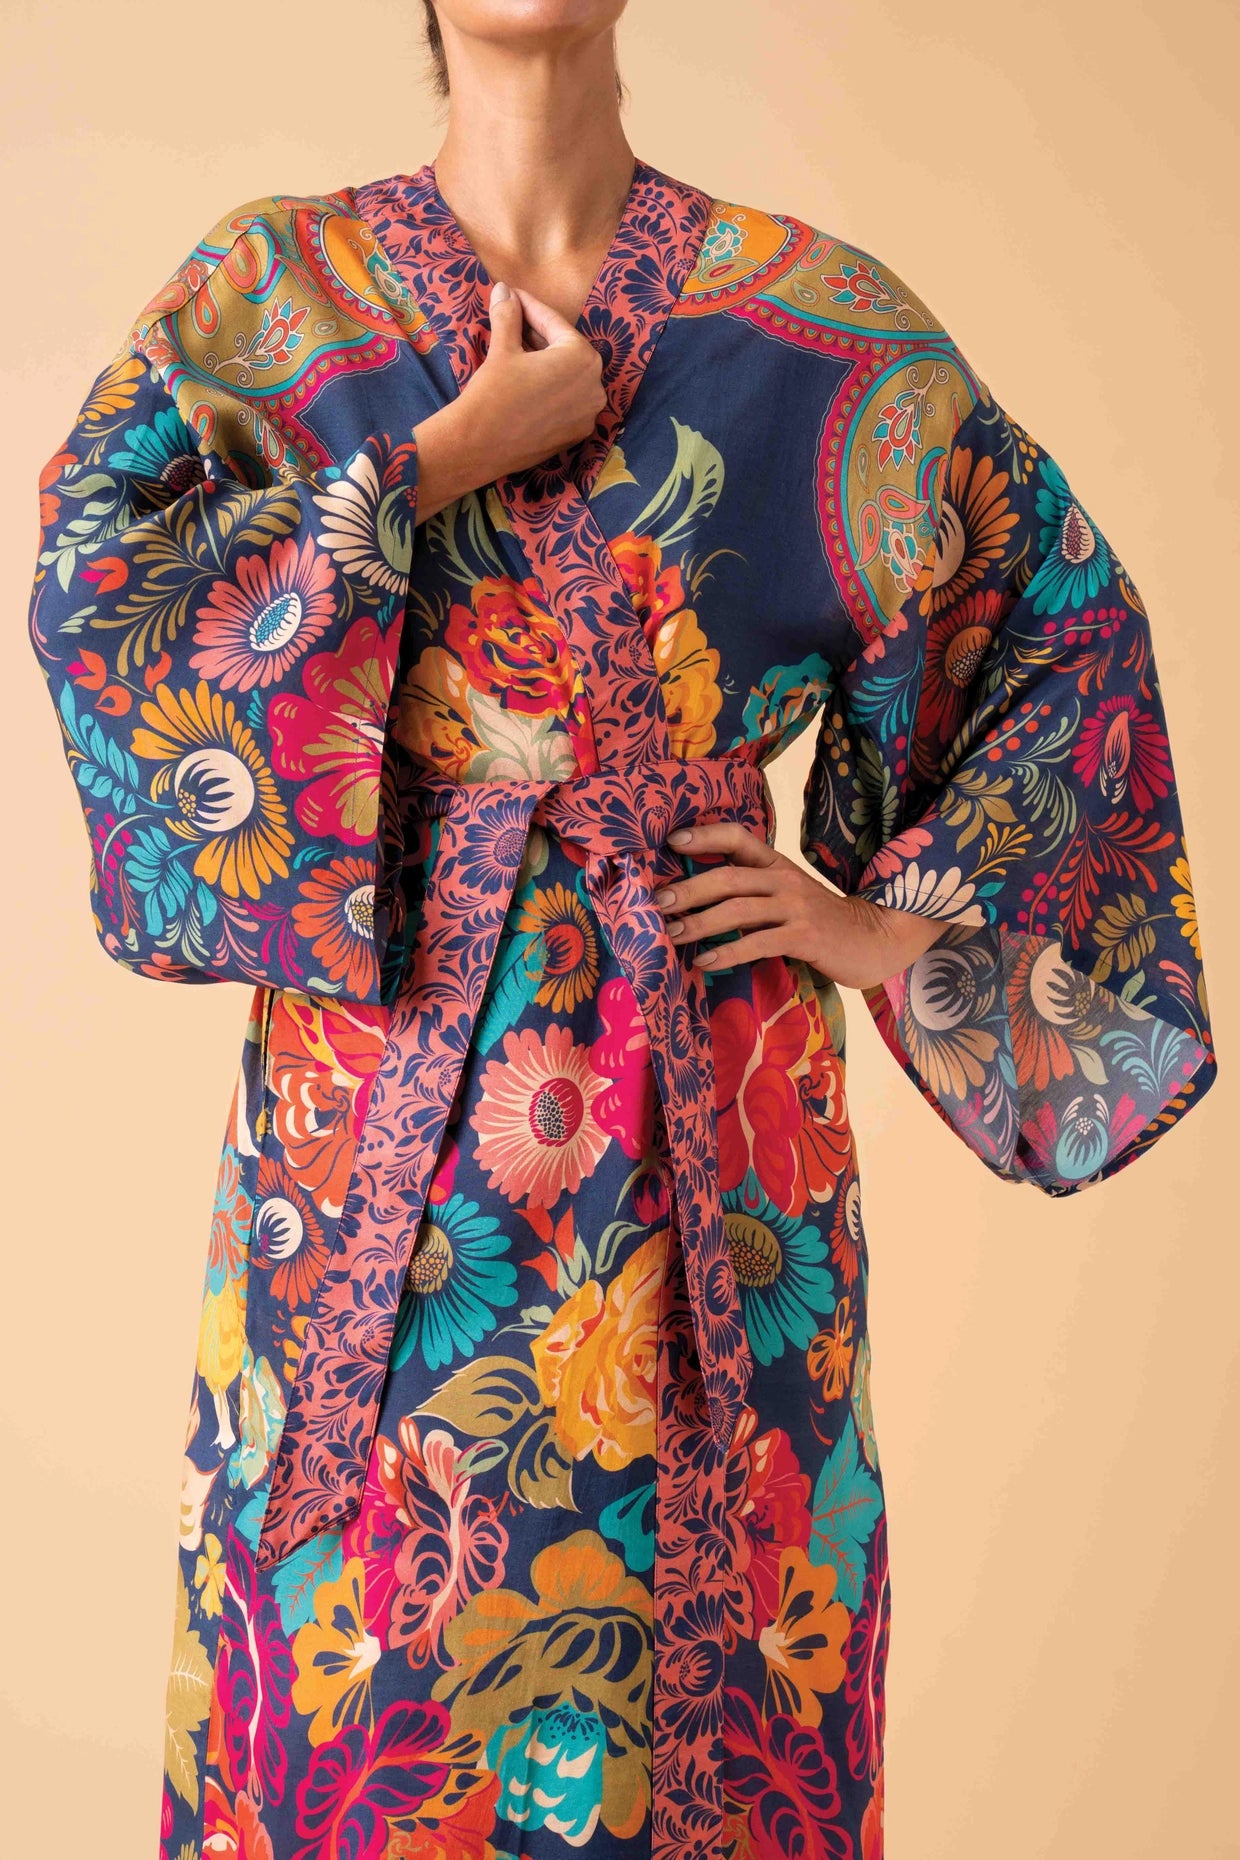 Kimono Gown * More Colors*